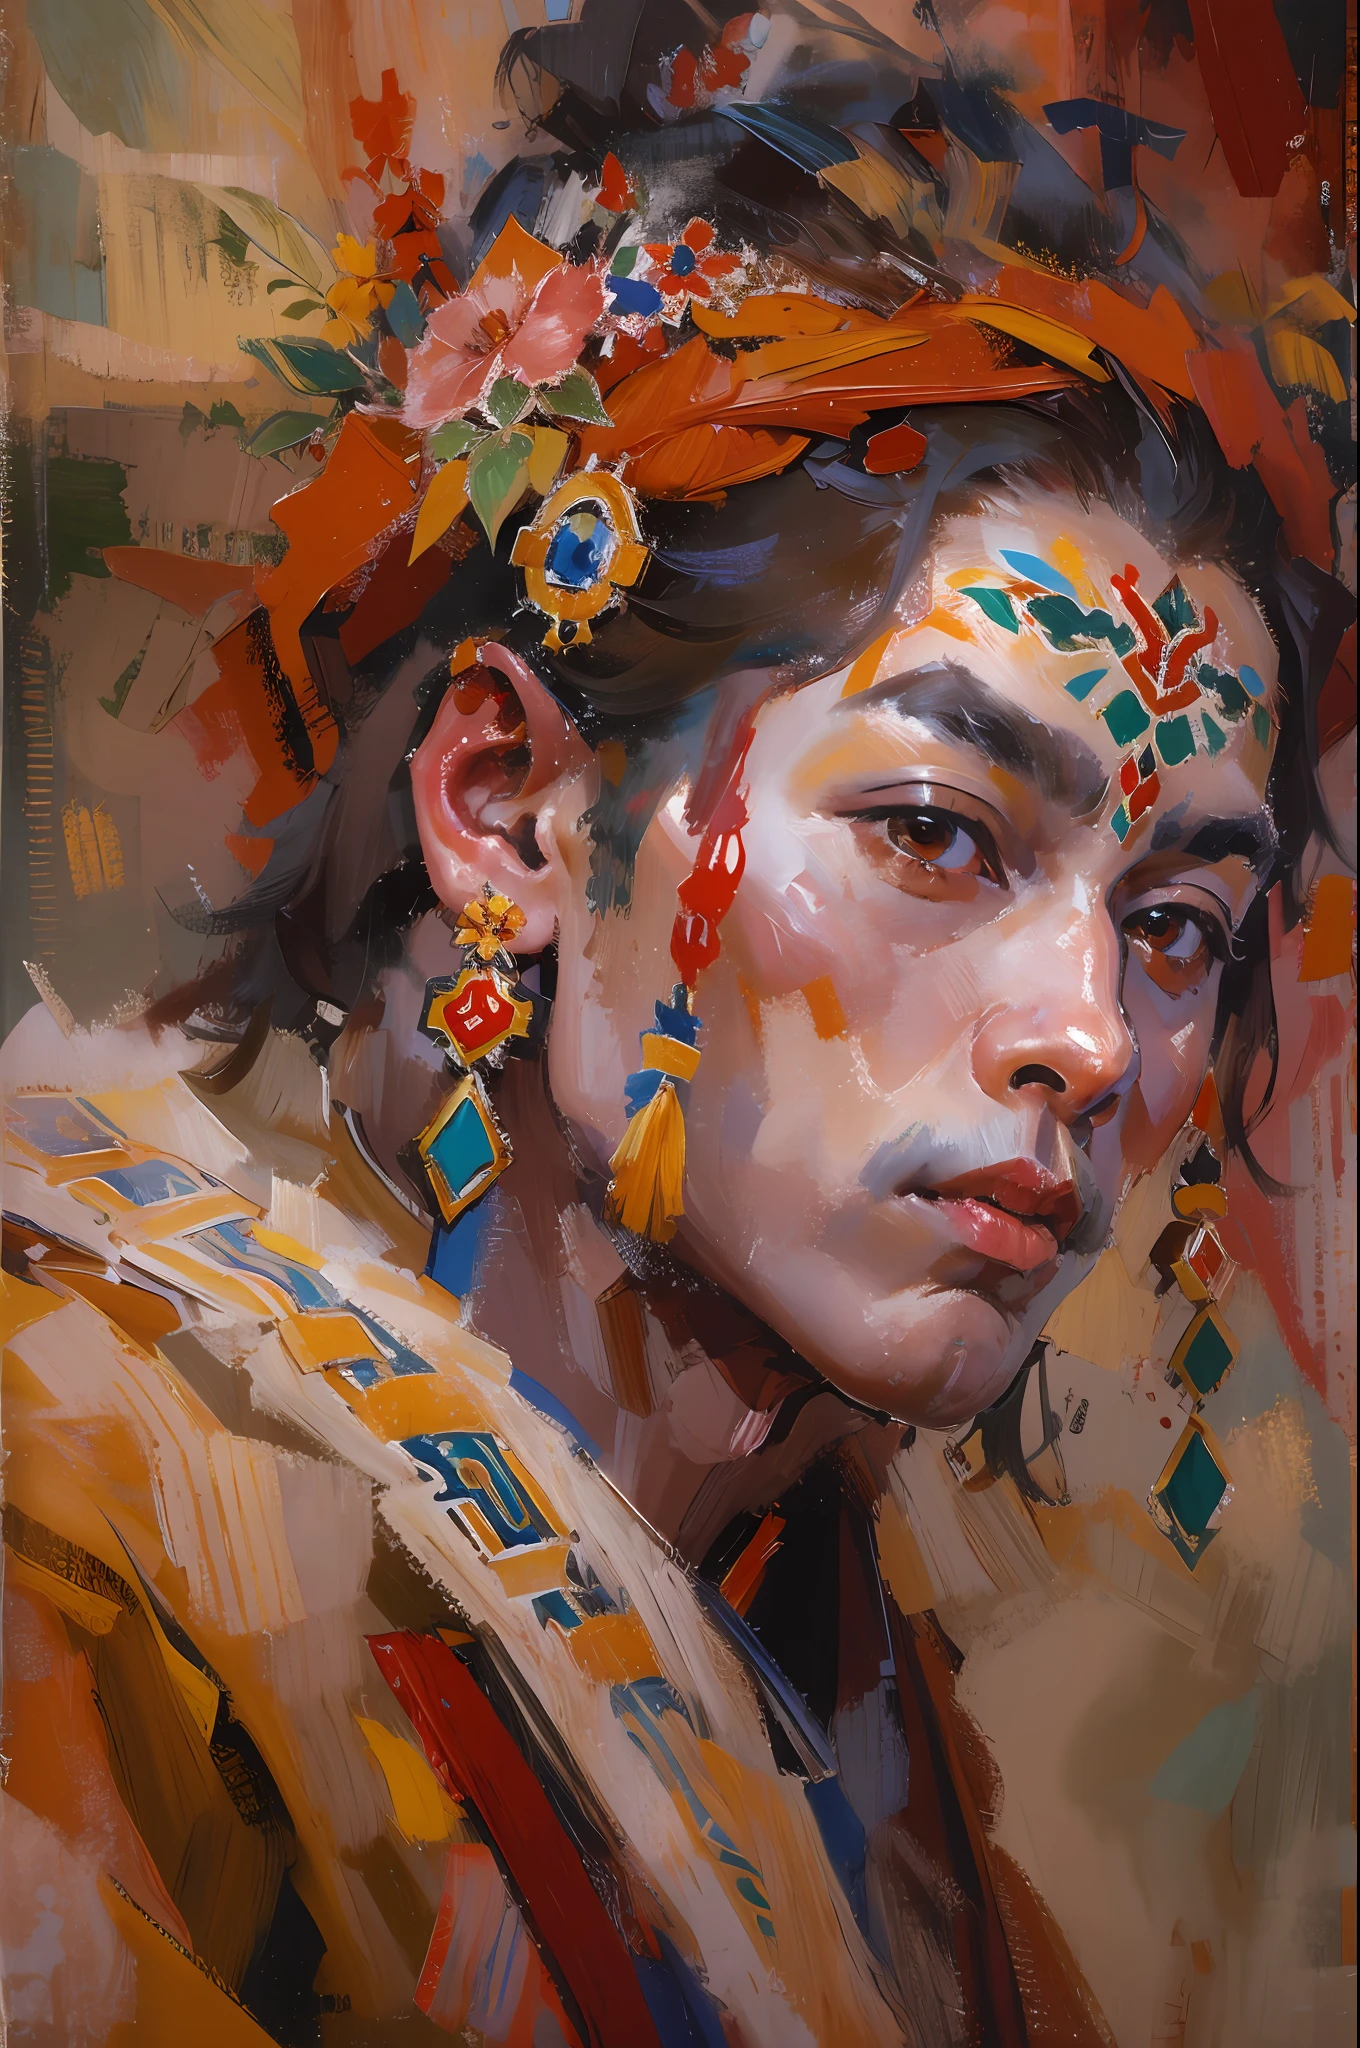 西藏布达拉宫，帅气的藏族男孩，藏族服饰，热情的，舞蹈，黑色长发，脸红，油彩，油墨，丙烯画，杰作，文艺复兴风格，最好的品质，高分辨率，超细，眼睛详细，面详细，头发细节，准确的，清晰的眼部聚焦特写